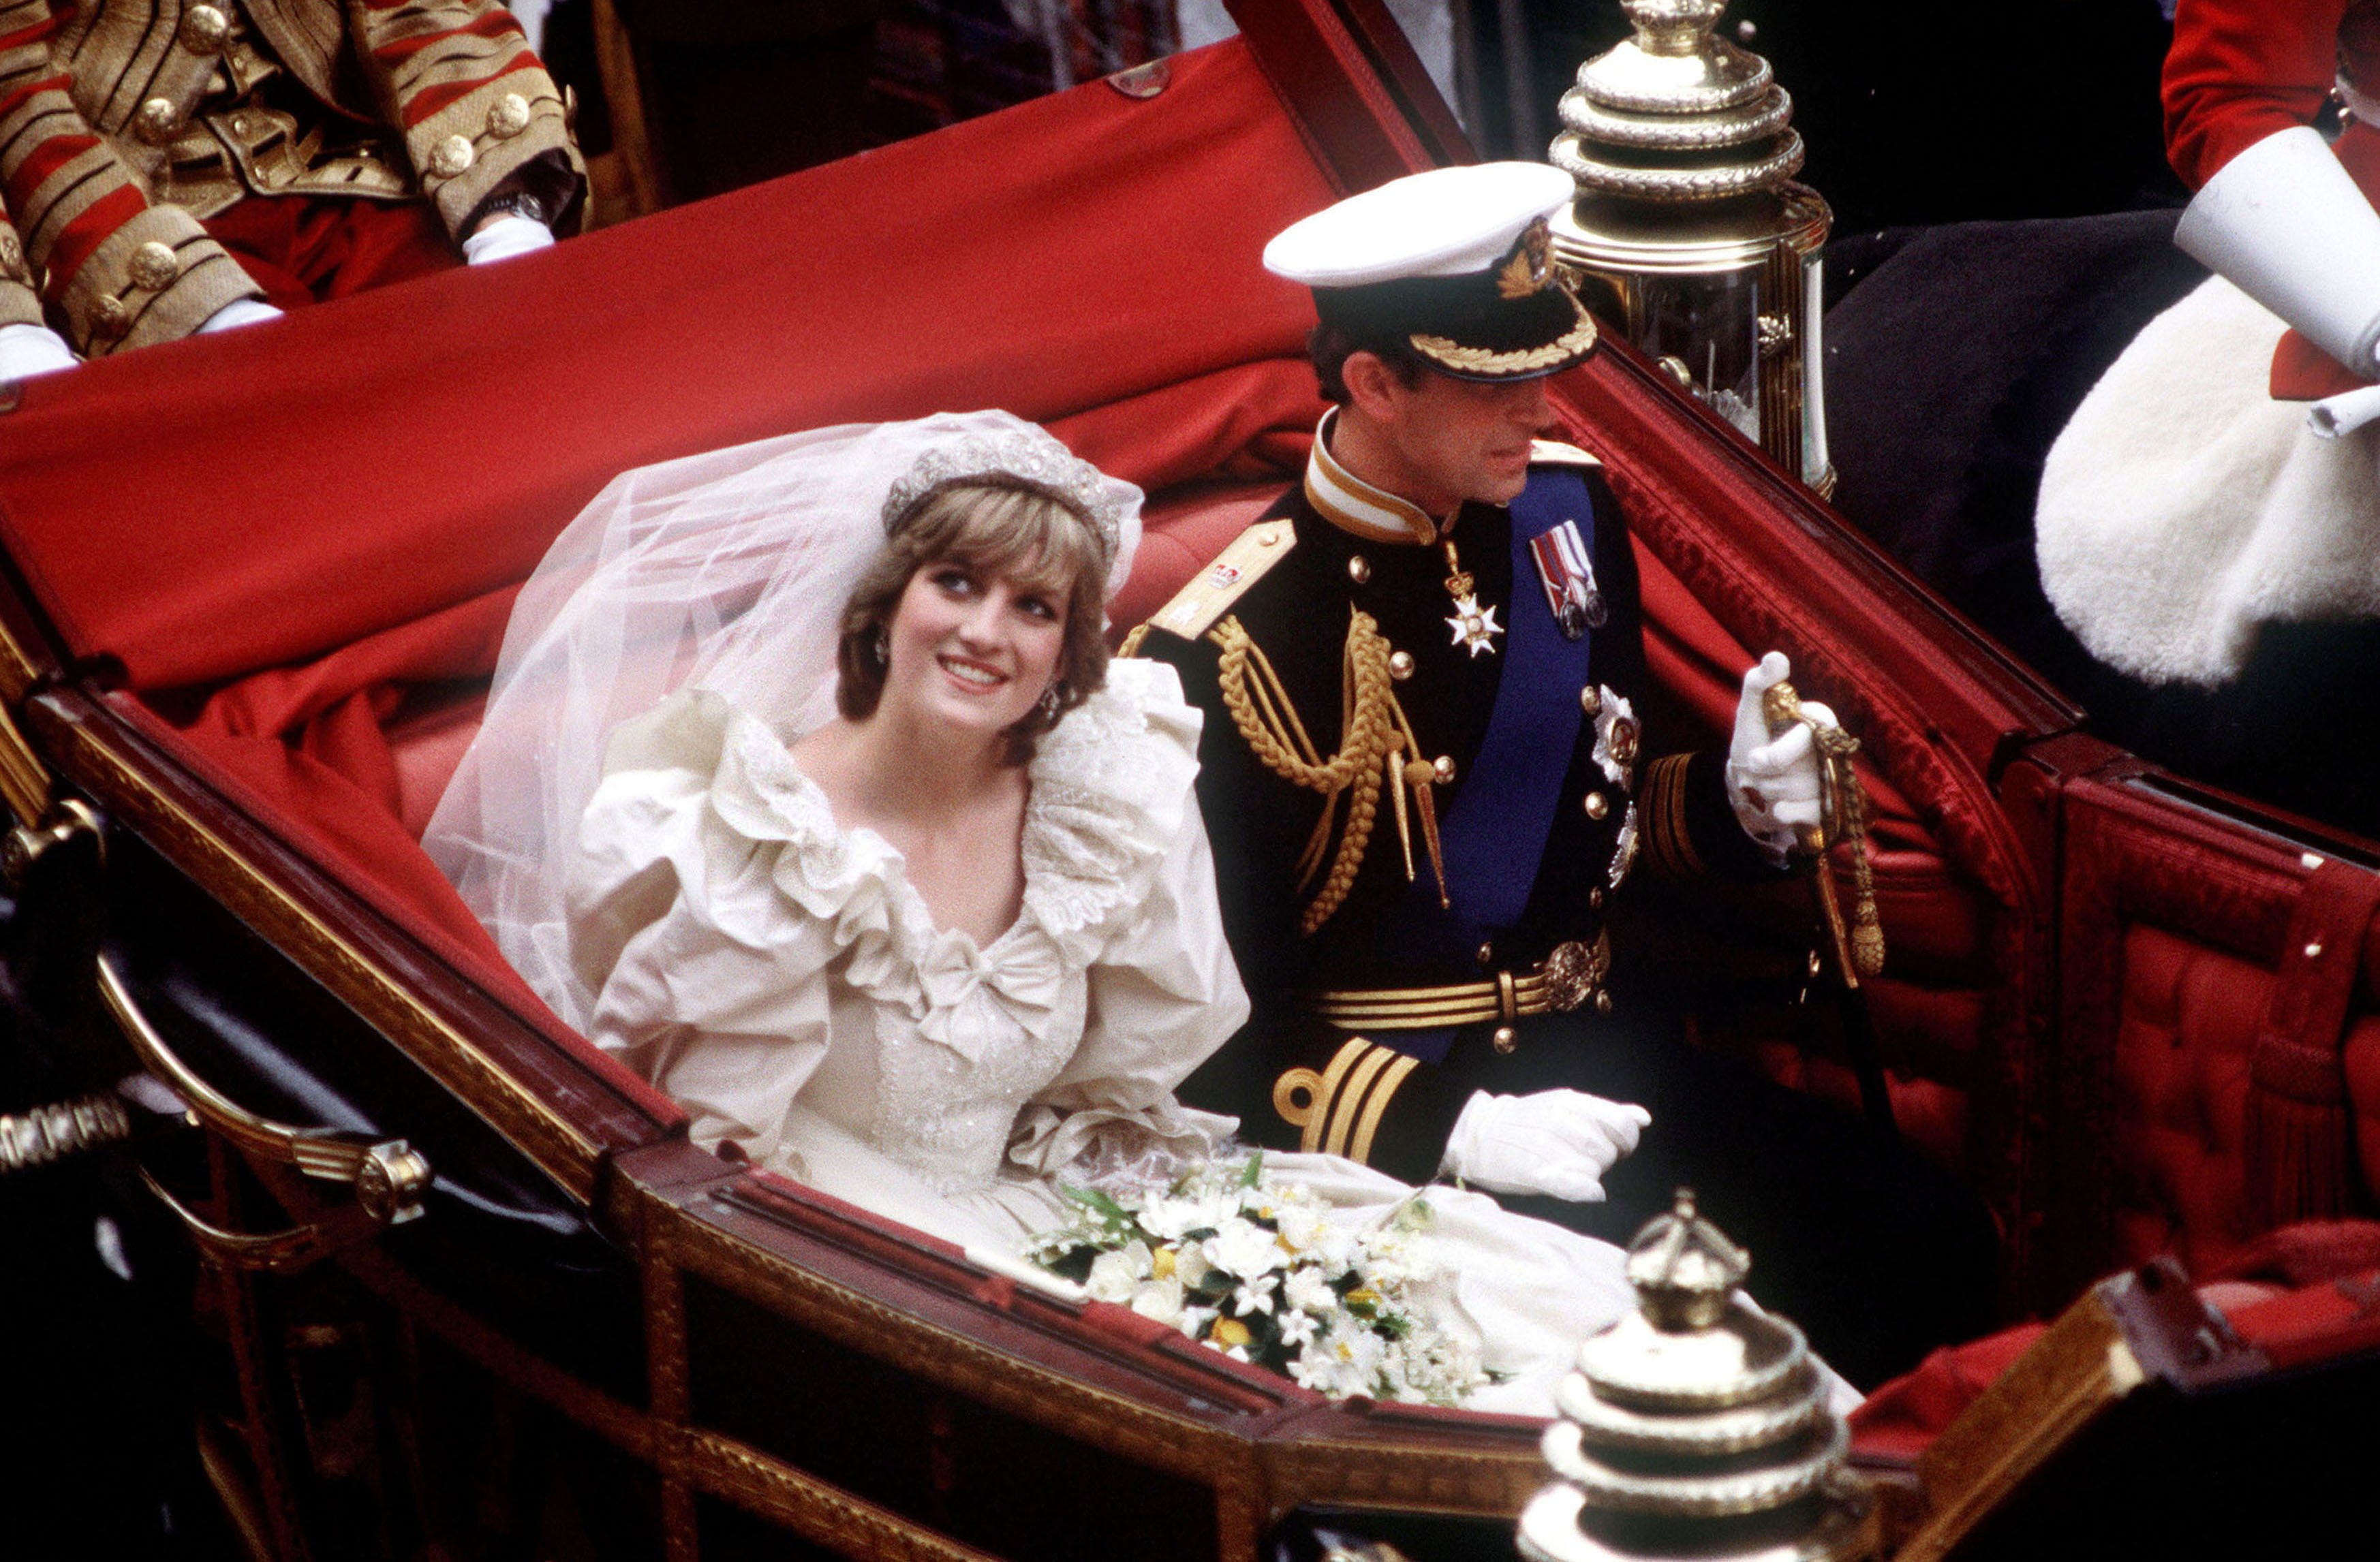 Le prince et la princesse de Galles retournent en calèche au palais de Buckingham après leur mariage, le 29 juillet 1981. | Source : Princess Diana Archive/Getty Images